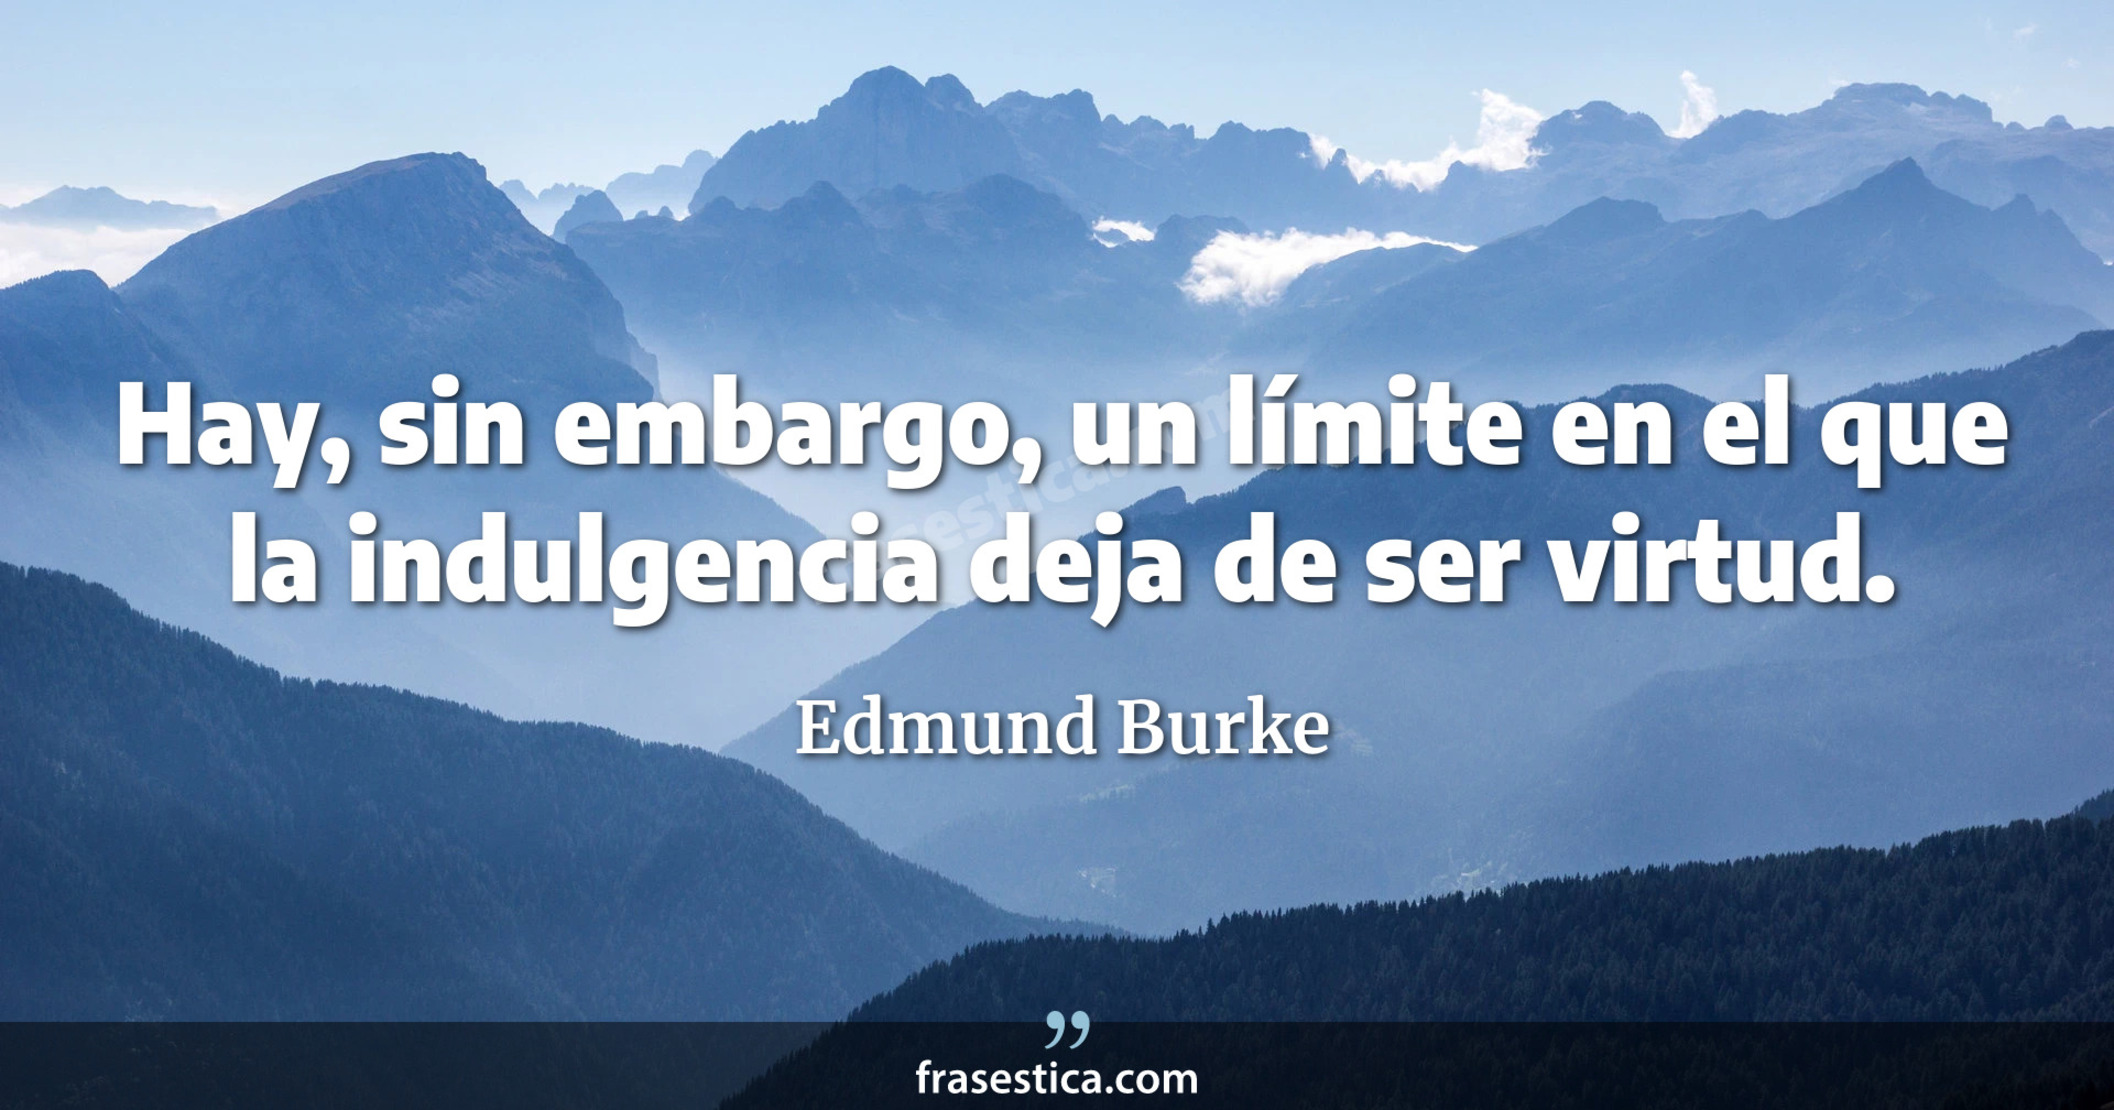 Hay, sin embargo, un límite en el que la indulgencia deja de ser virtud. - Edmund Burke